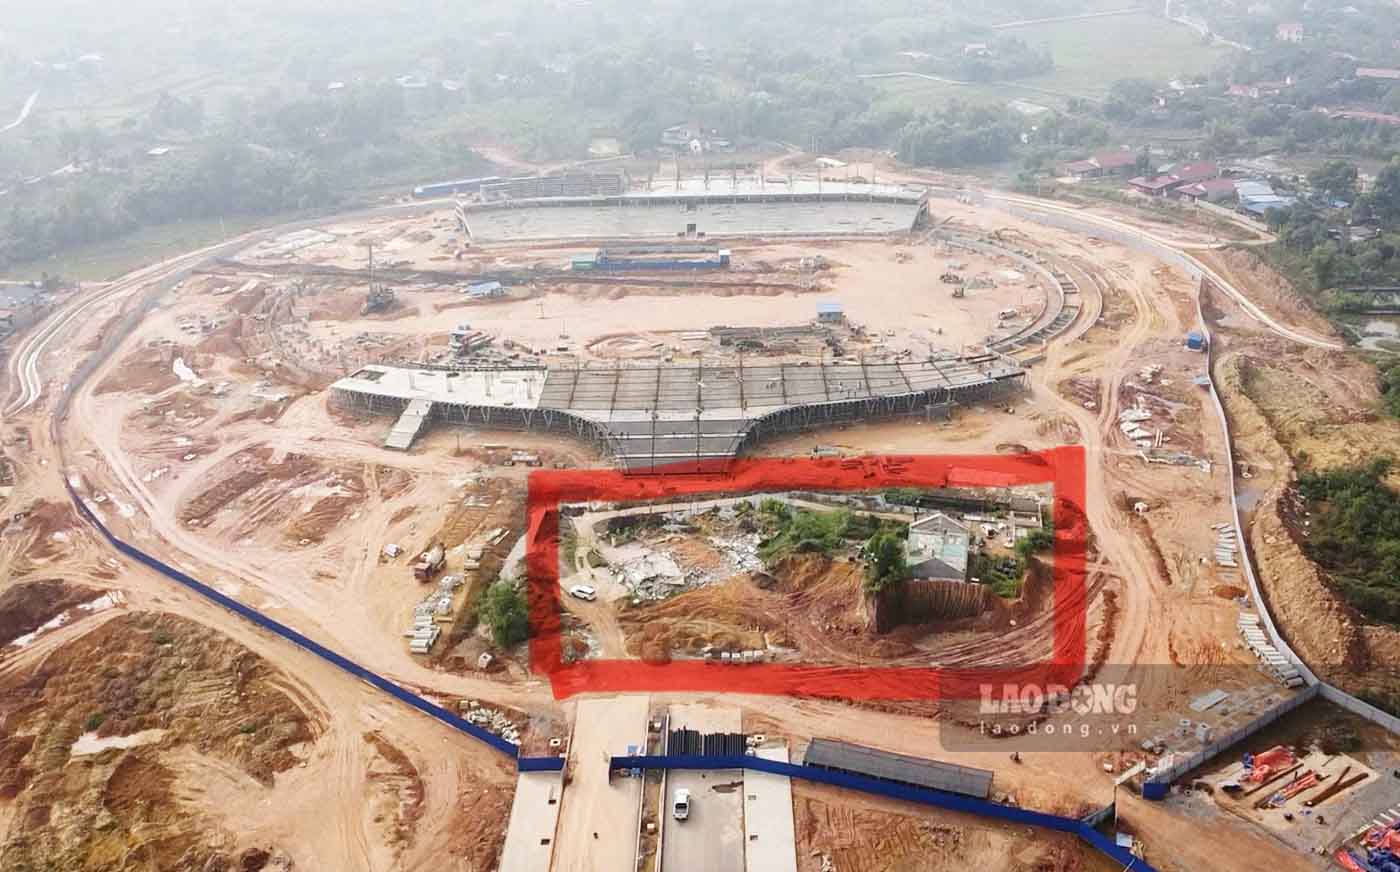 Như Lao Động đã thông tin, ngày 9.12 UBND TP Thái Nguyên đã thông qua phương án cưỡng chế thu hồi đất của 3 hộ dân chưa bàn giao mặt bằng để xây Dự án Sân vận động Thái Nguyên. Đến ngày 11.12, việc tháo dỡ được triển khai.